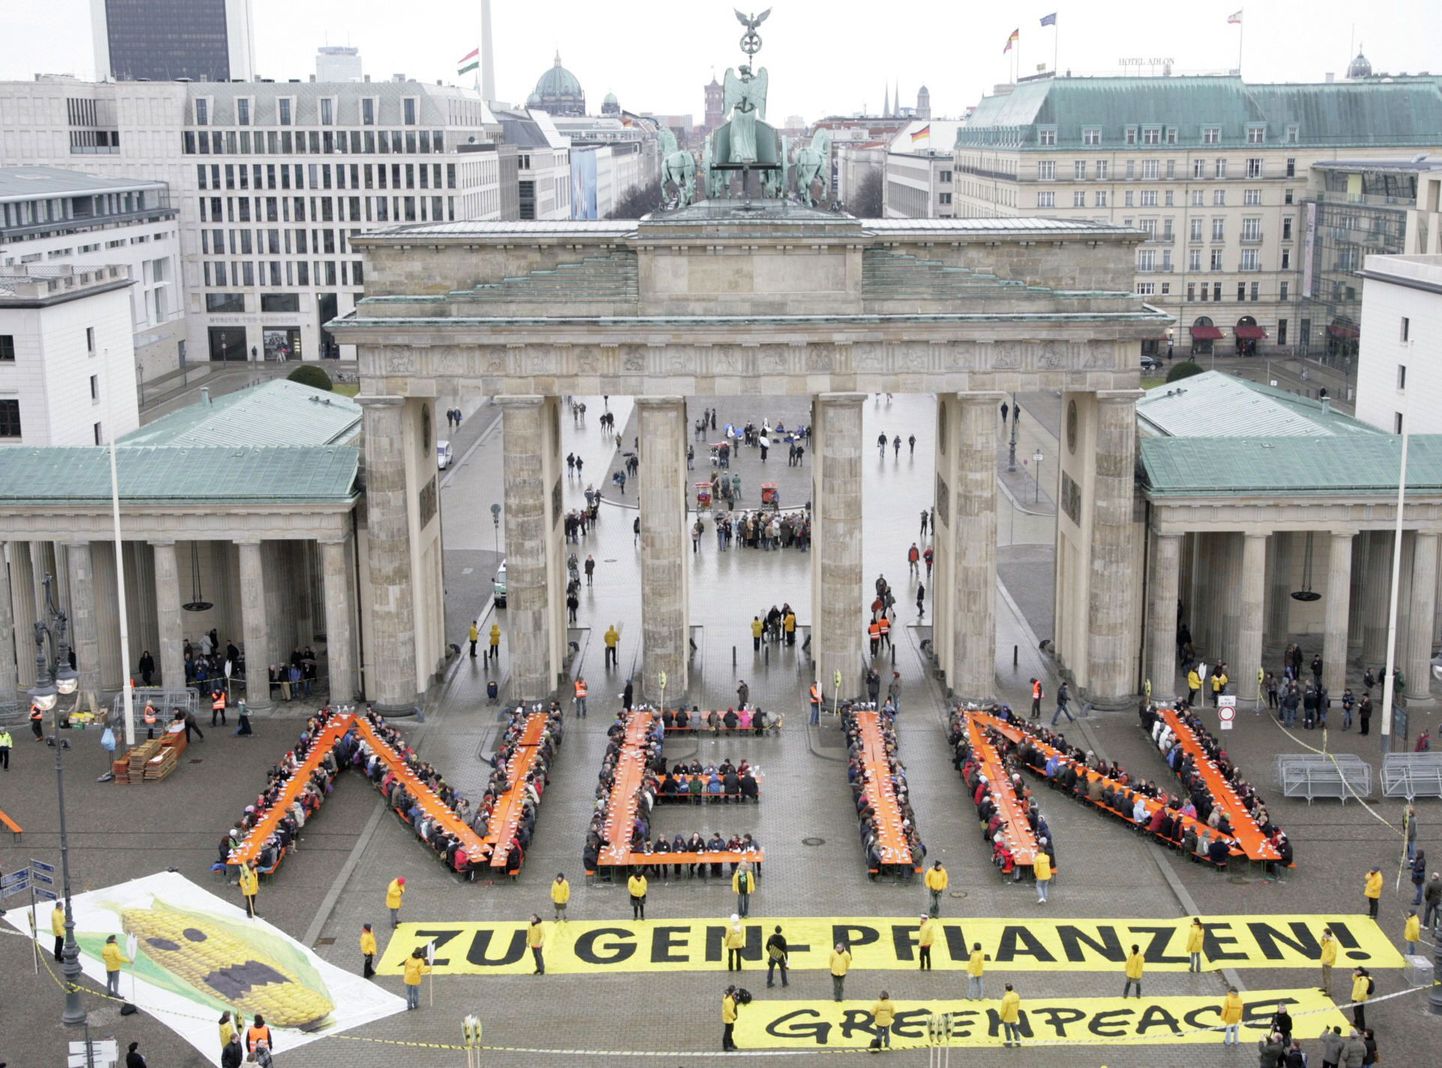 Greenpeace'i aktivistid Berliinis Brandenburgi väravate juures.